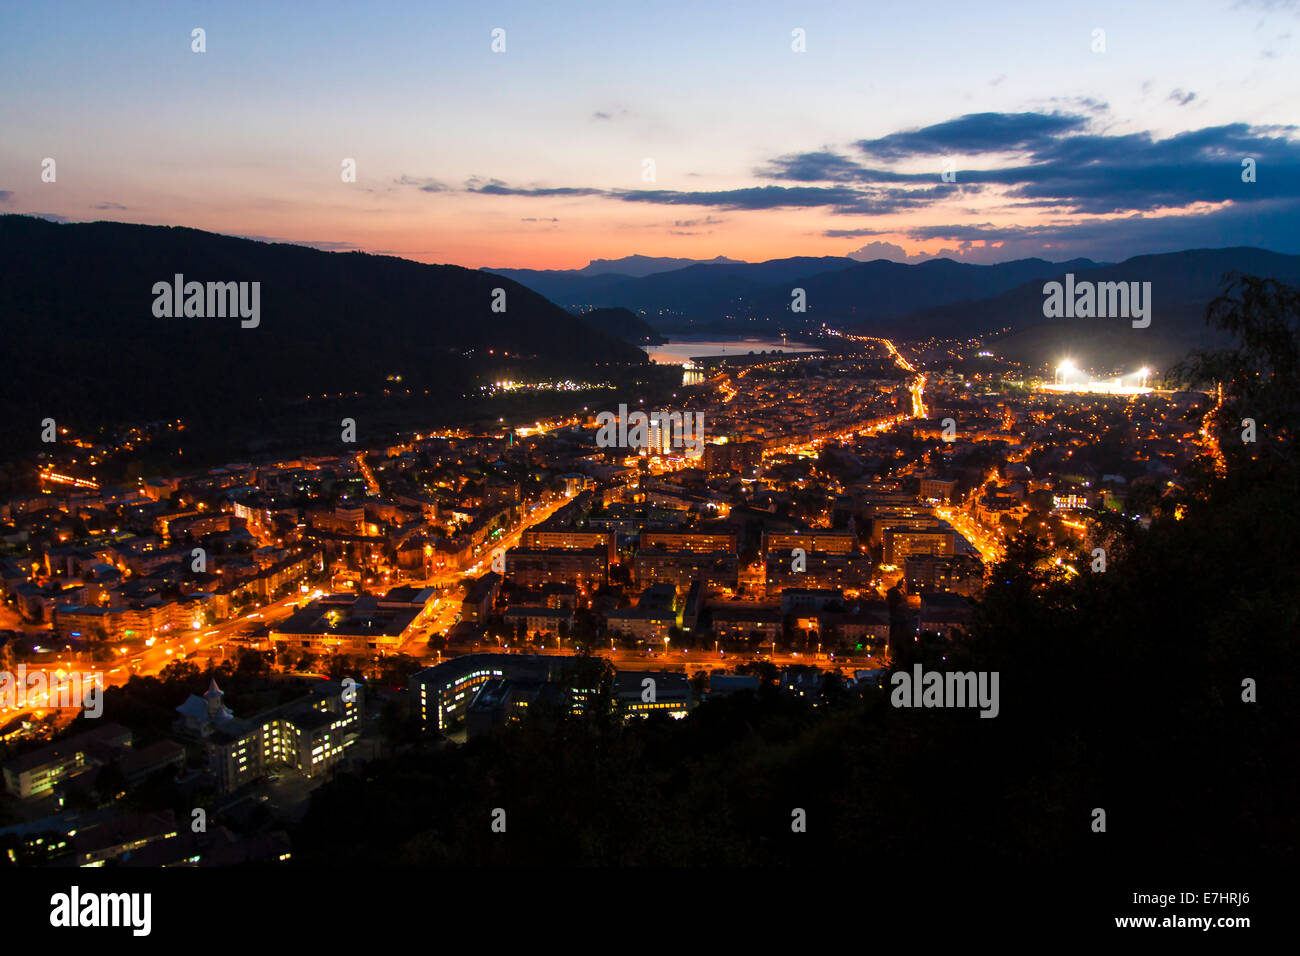 Lights in city, night scene in Piatra Neamt Stock Photo